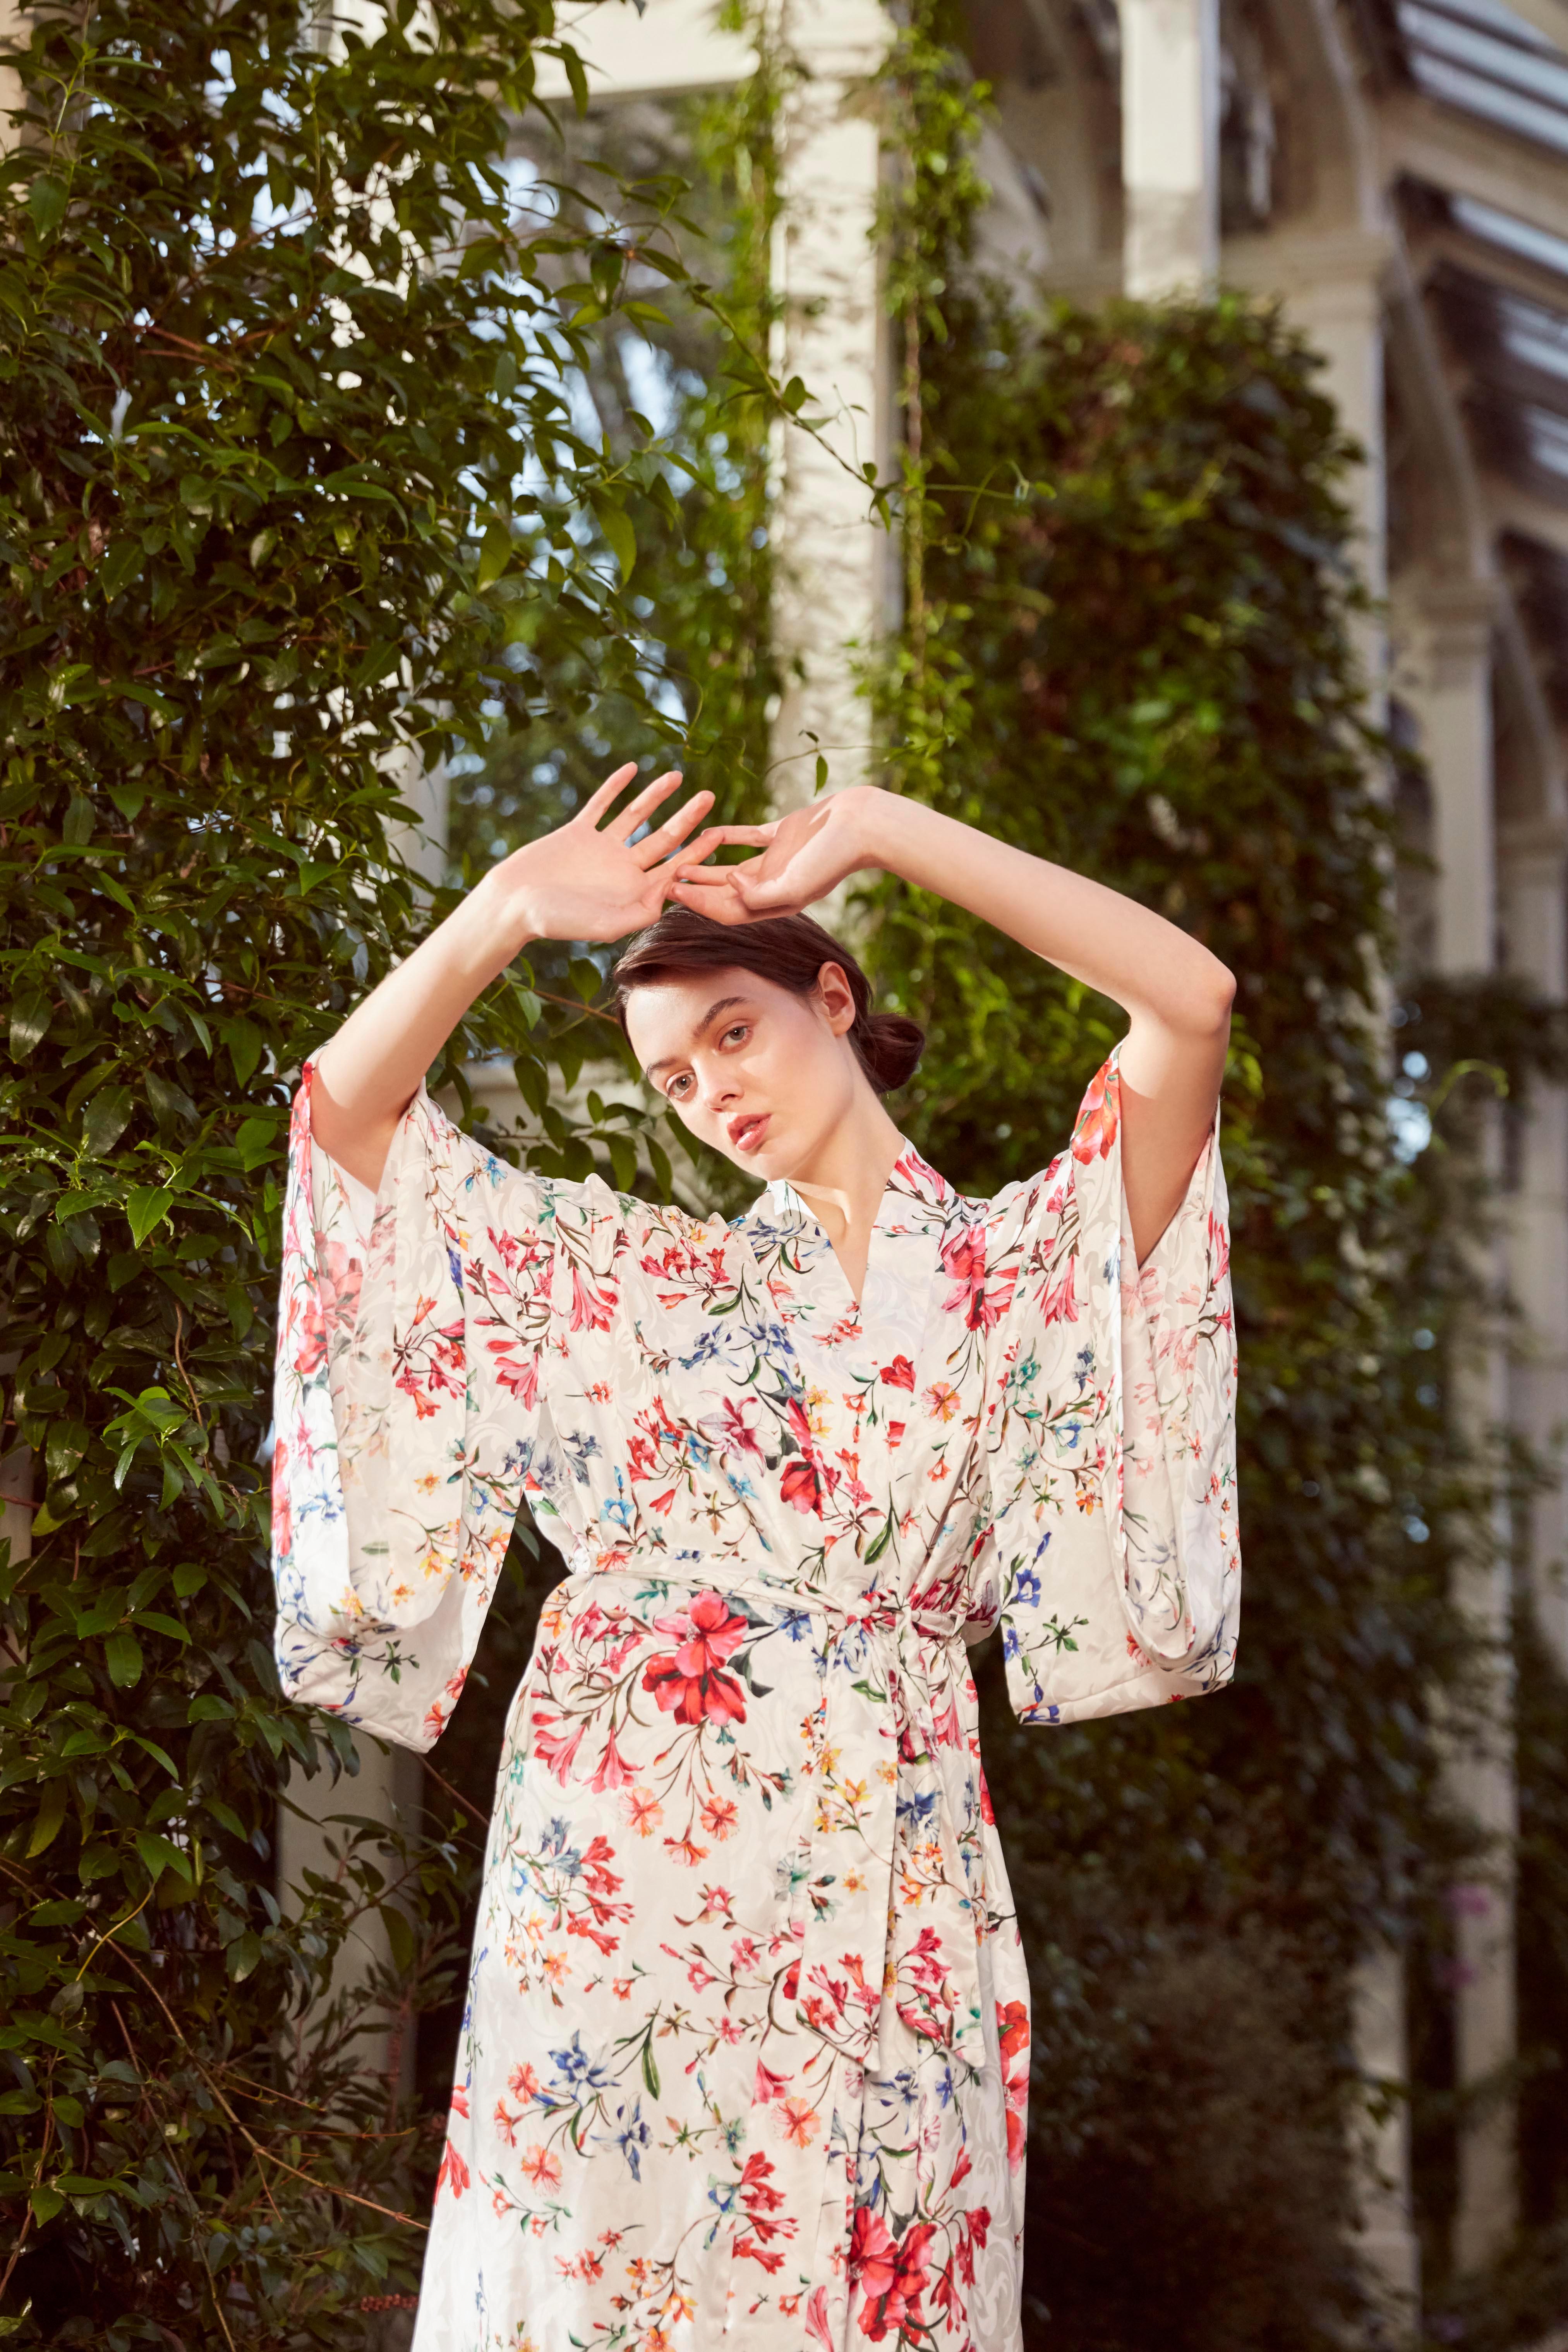 Der Kimono von Verheyen London ist das perfekte Kleid für die Abendgarderobe oder ein Mantelkleid, das man am Abend mit Jeans und Absätzen tragen kann.  
Handgefertigt in London aus 100 % italienischer Seide ist dieses luxuriöse Kleidungsstück eine